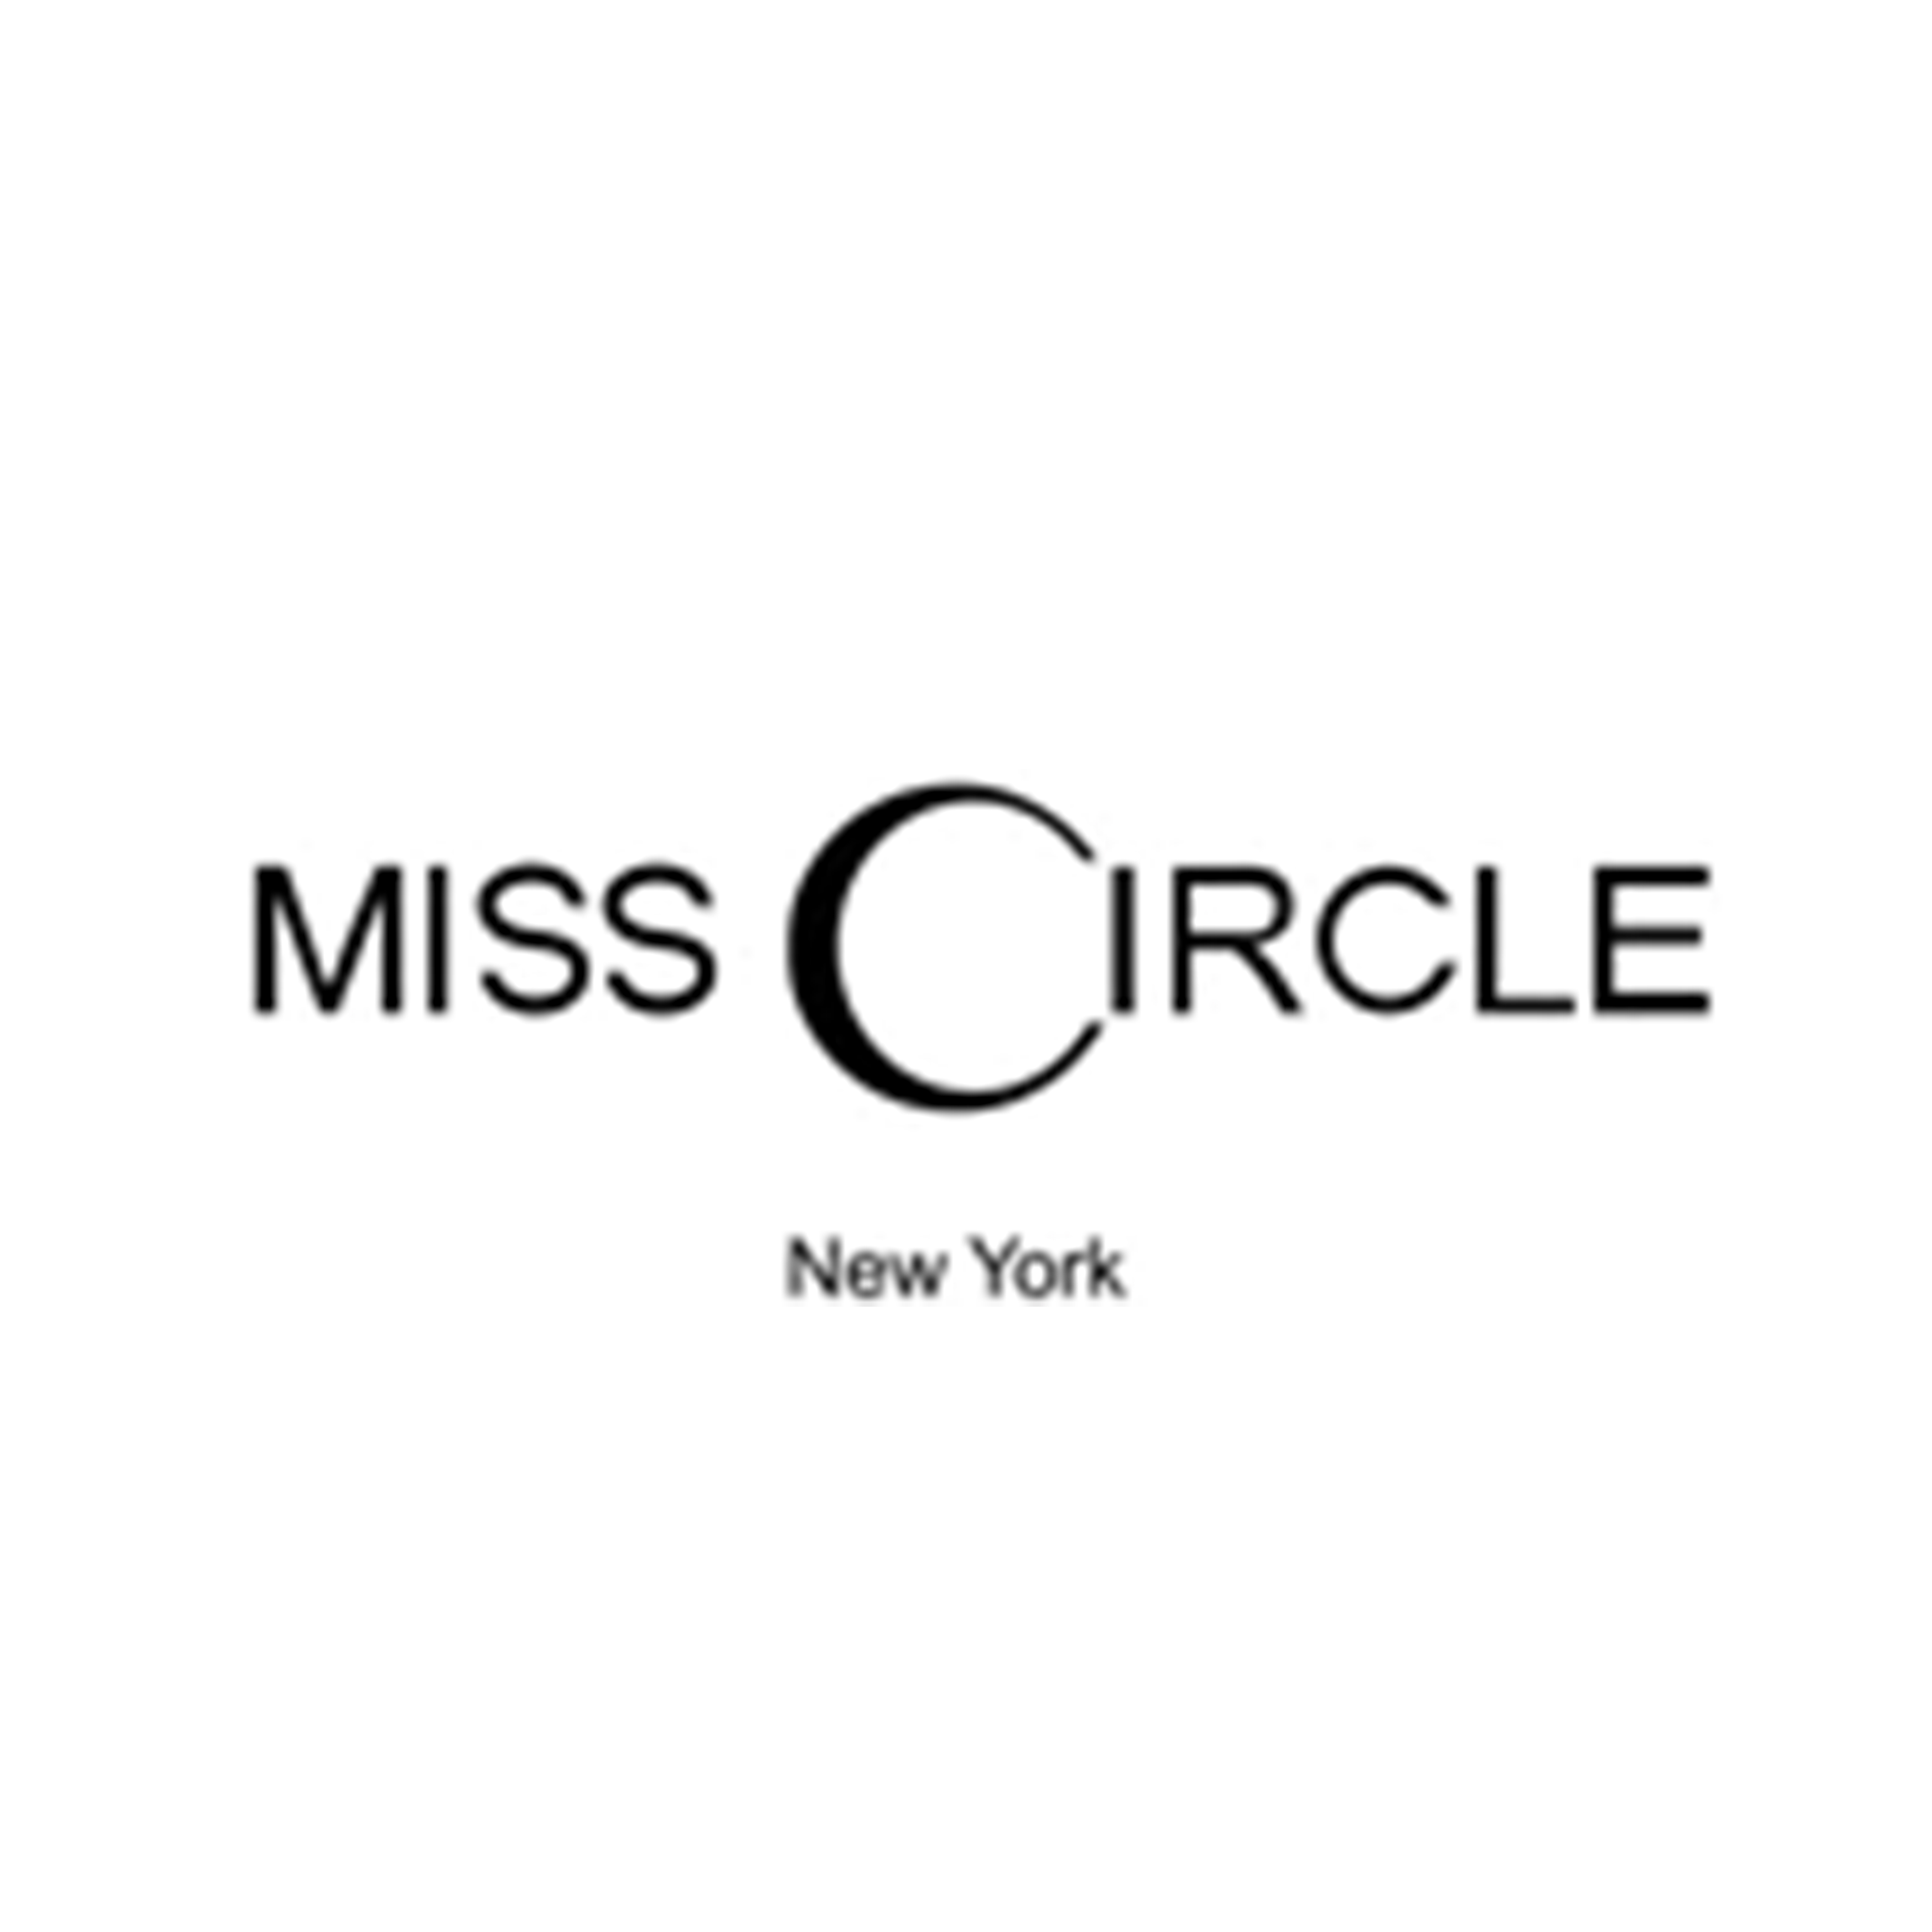 Miss Circle logo